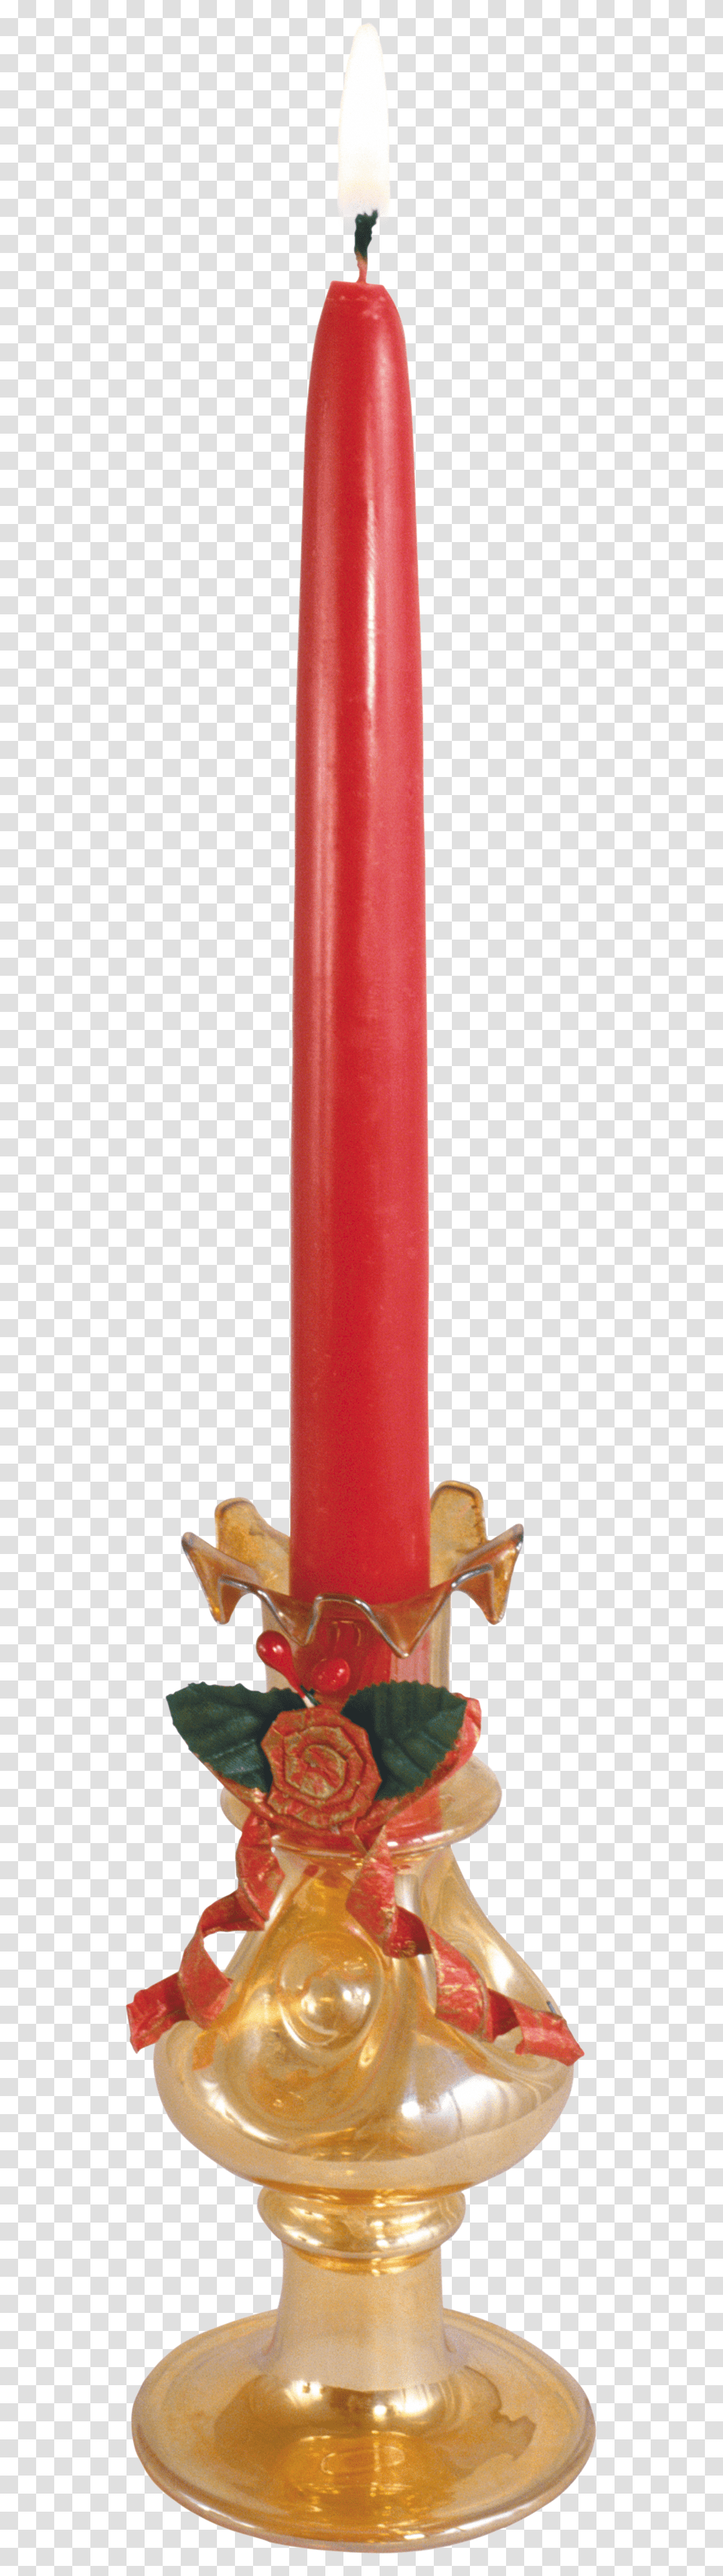 Candle, Cylinder, PEZ Dispenser Transparent Png